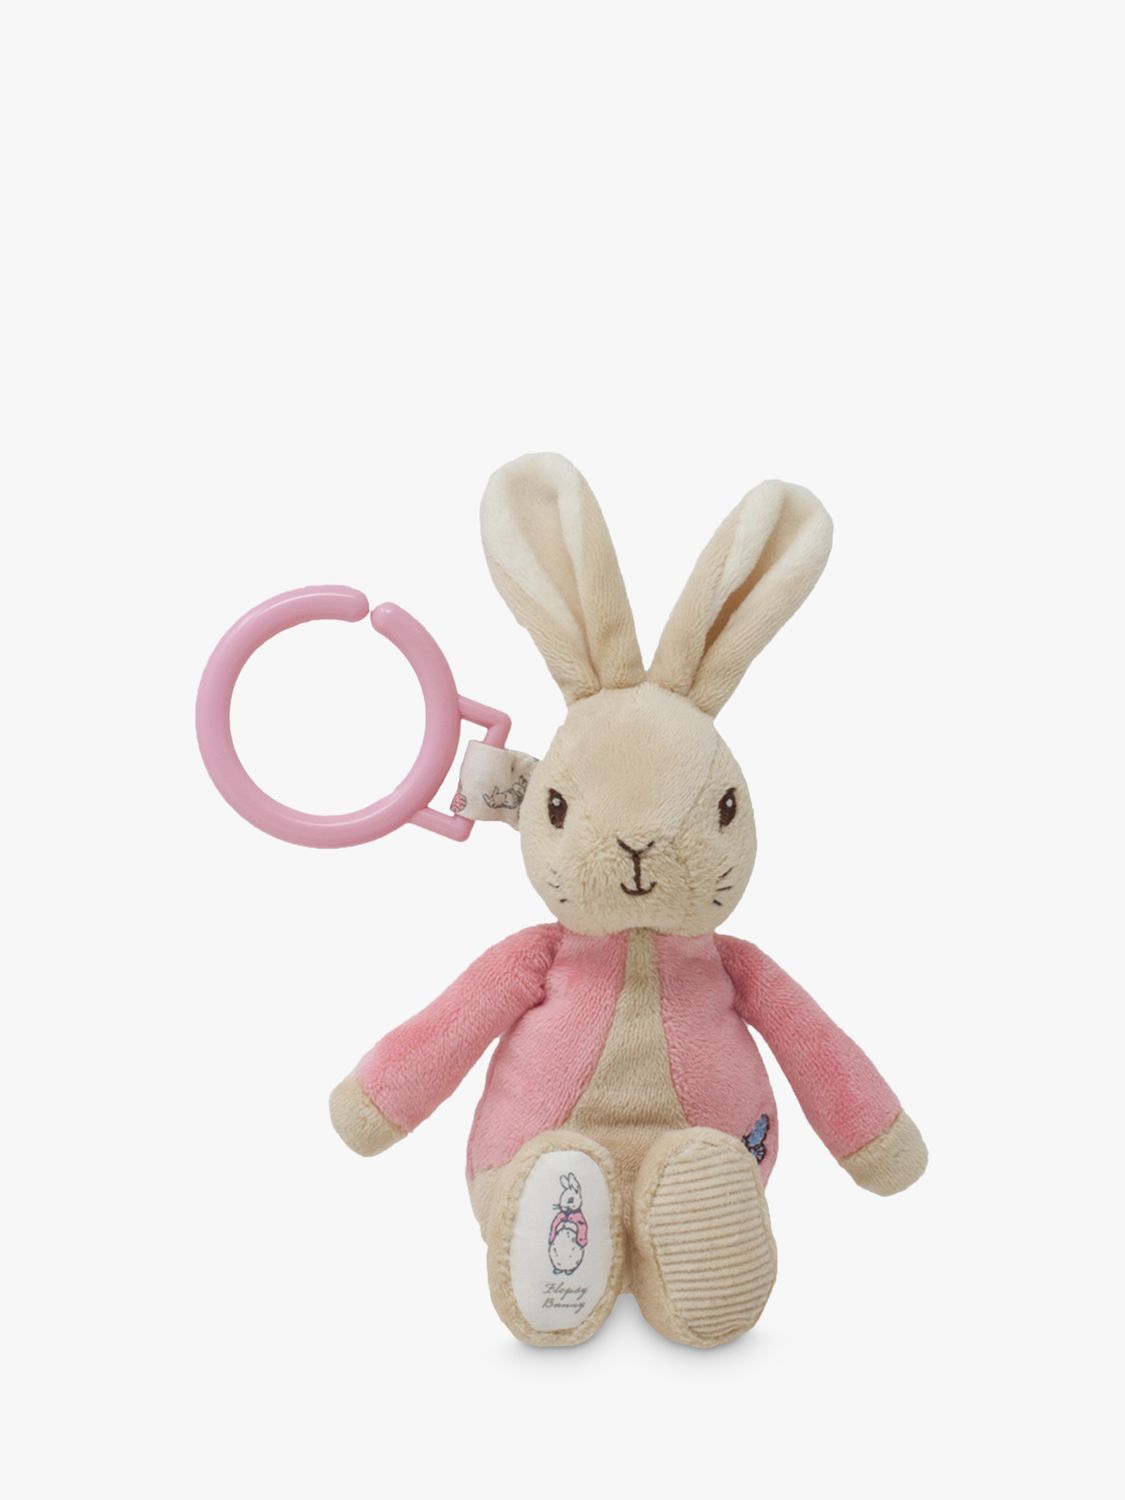 peter rabbit flopsy toy